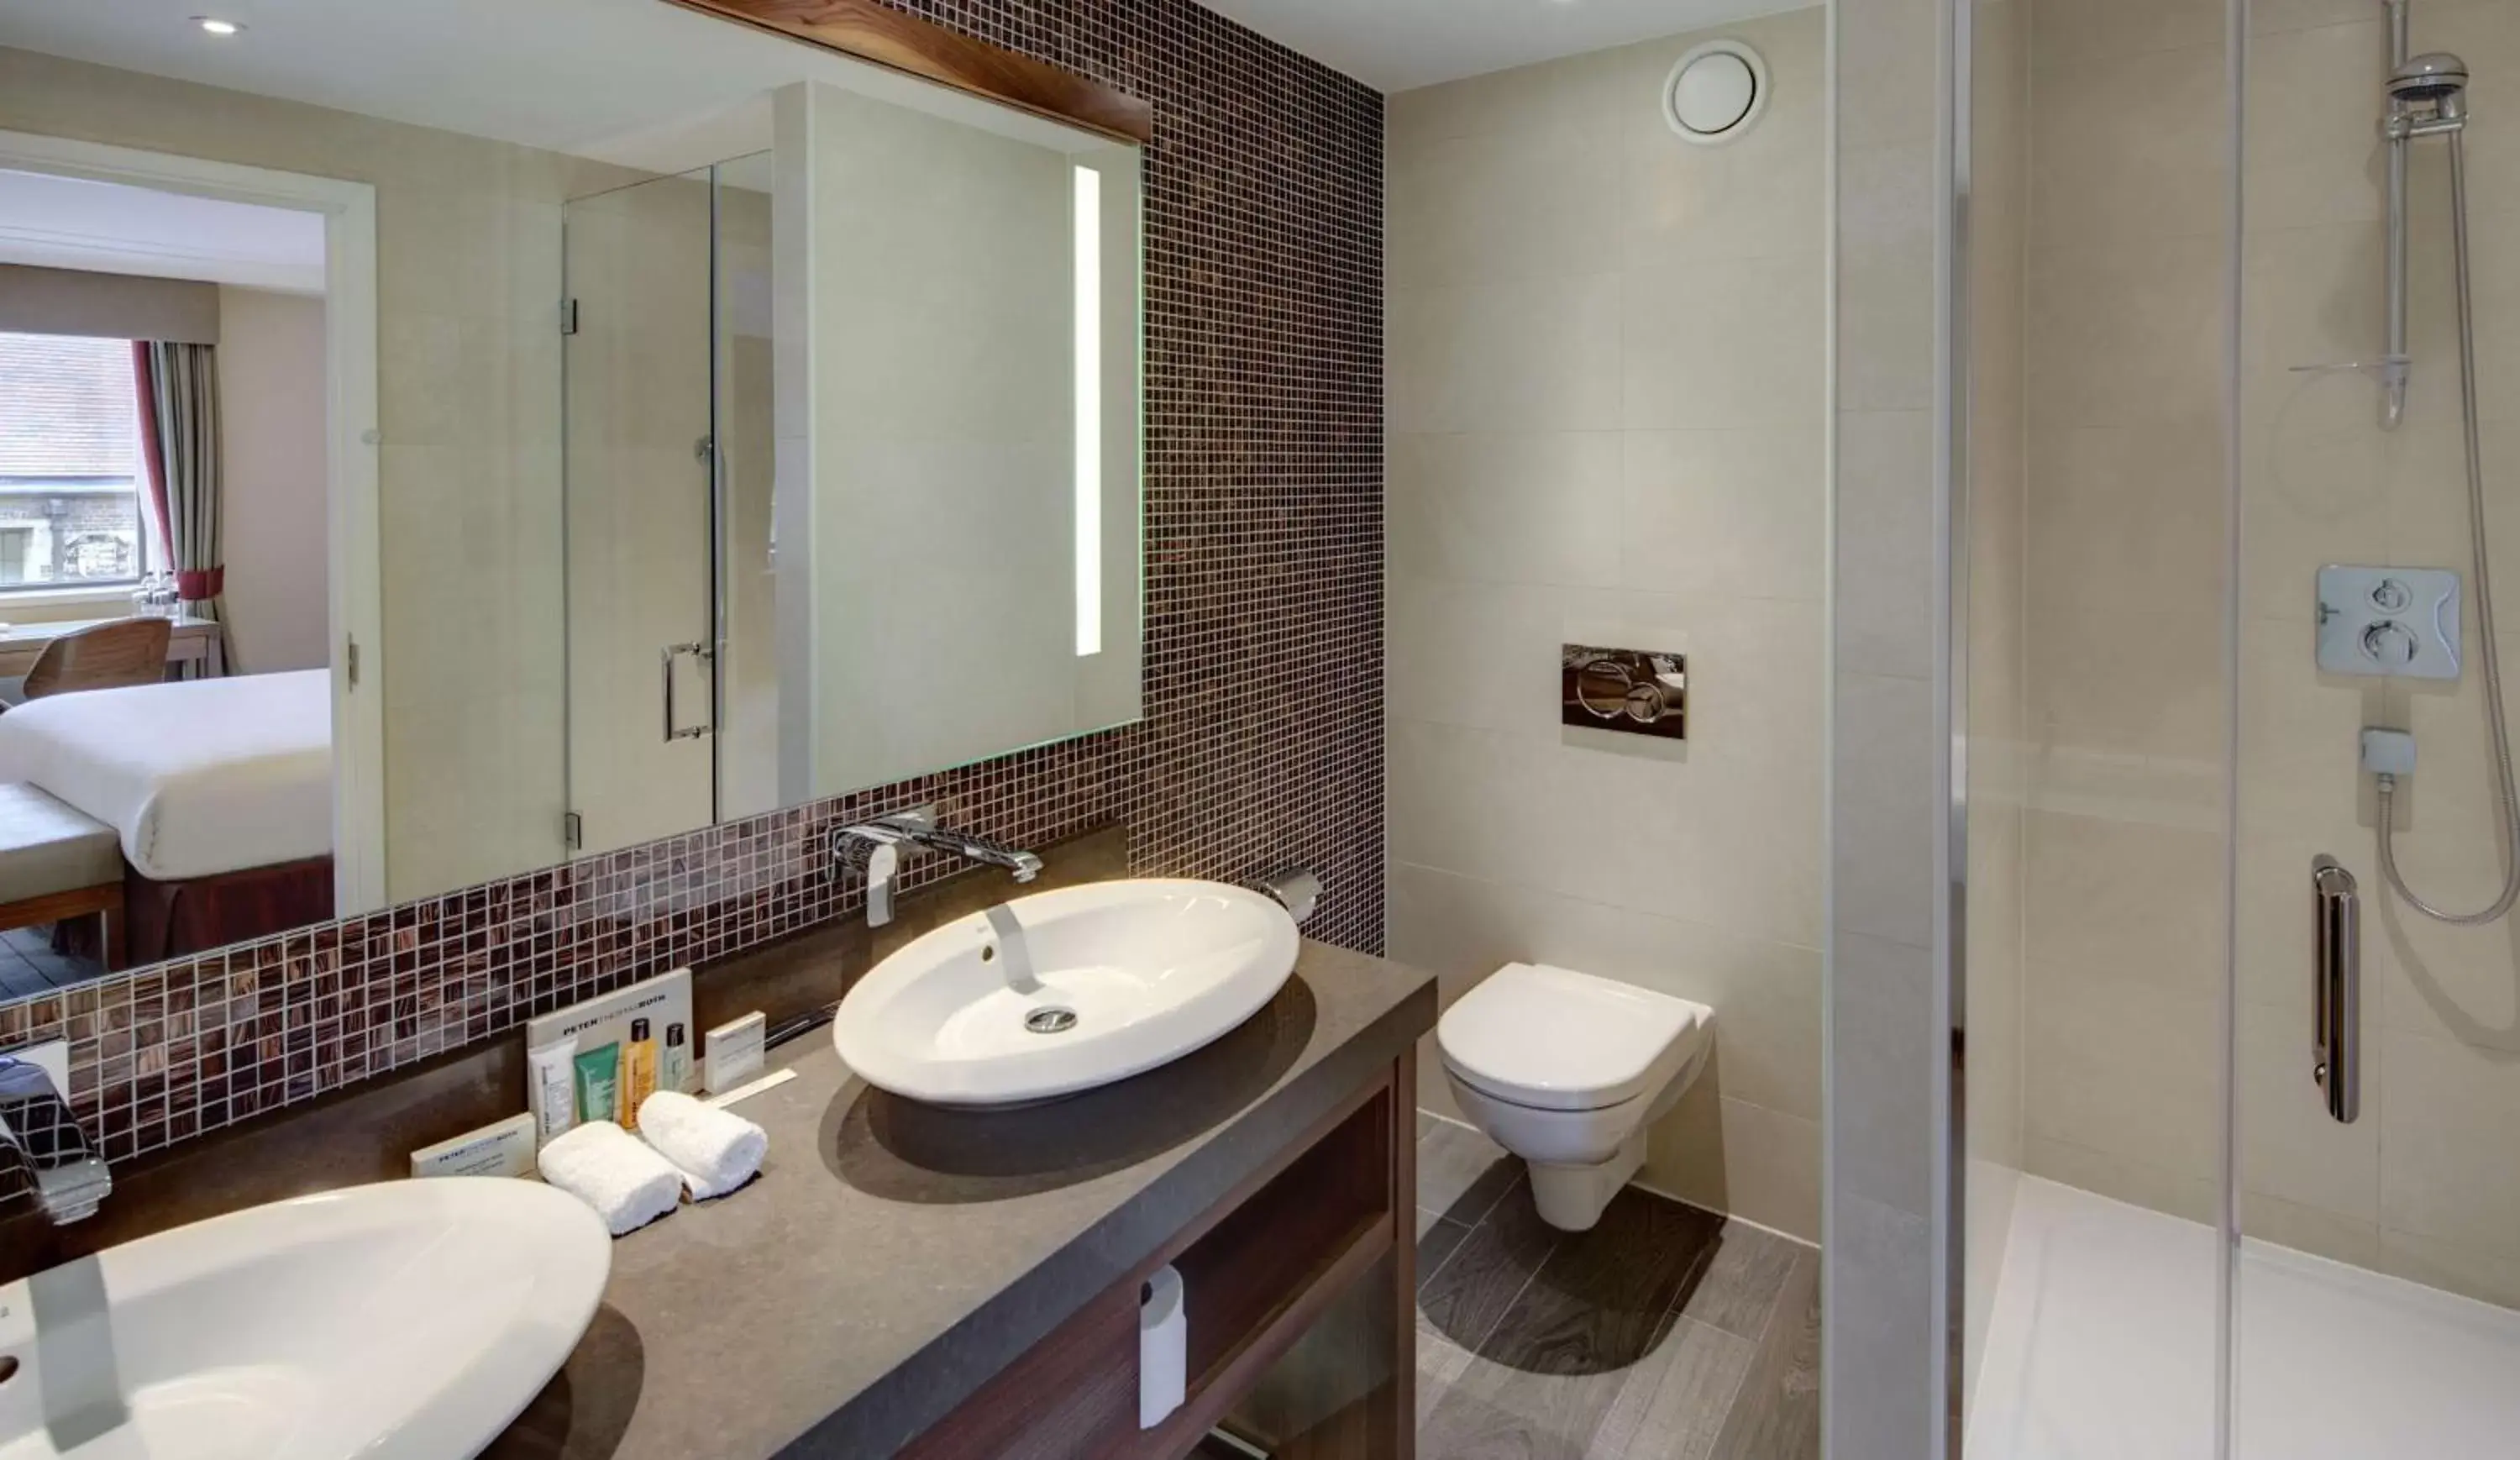 Bedroom, Bathroom in Hilton Cambridge City Centre